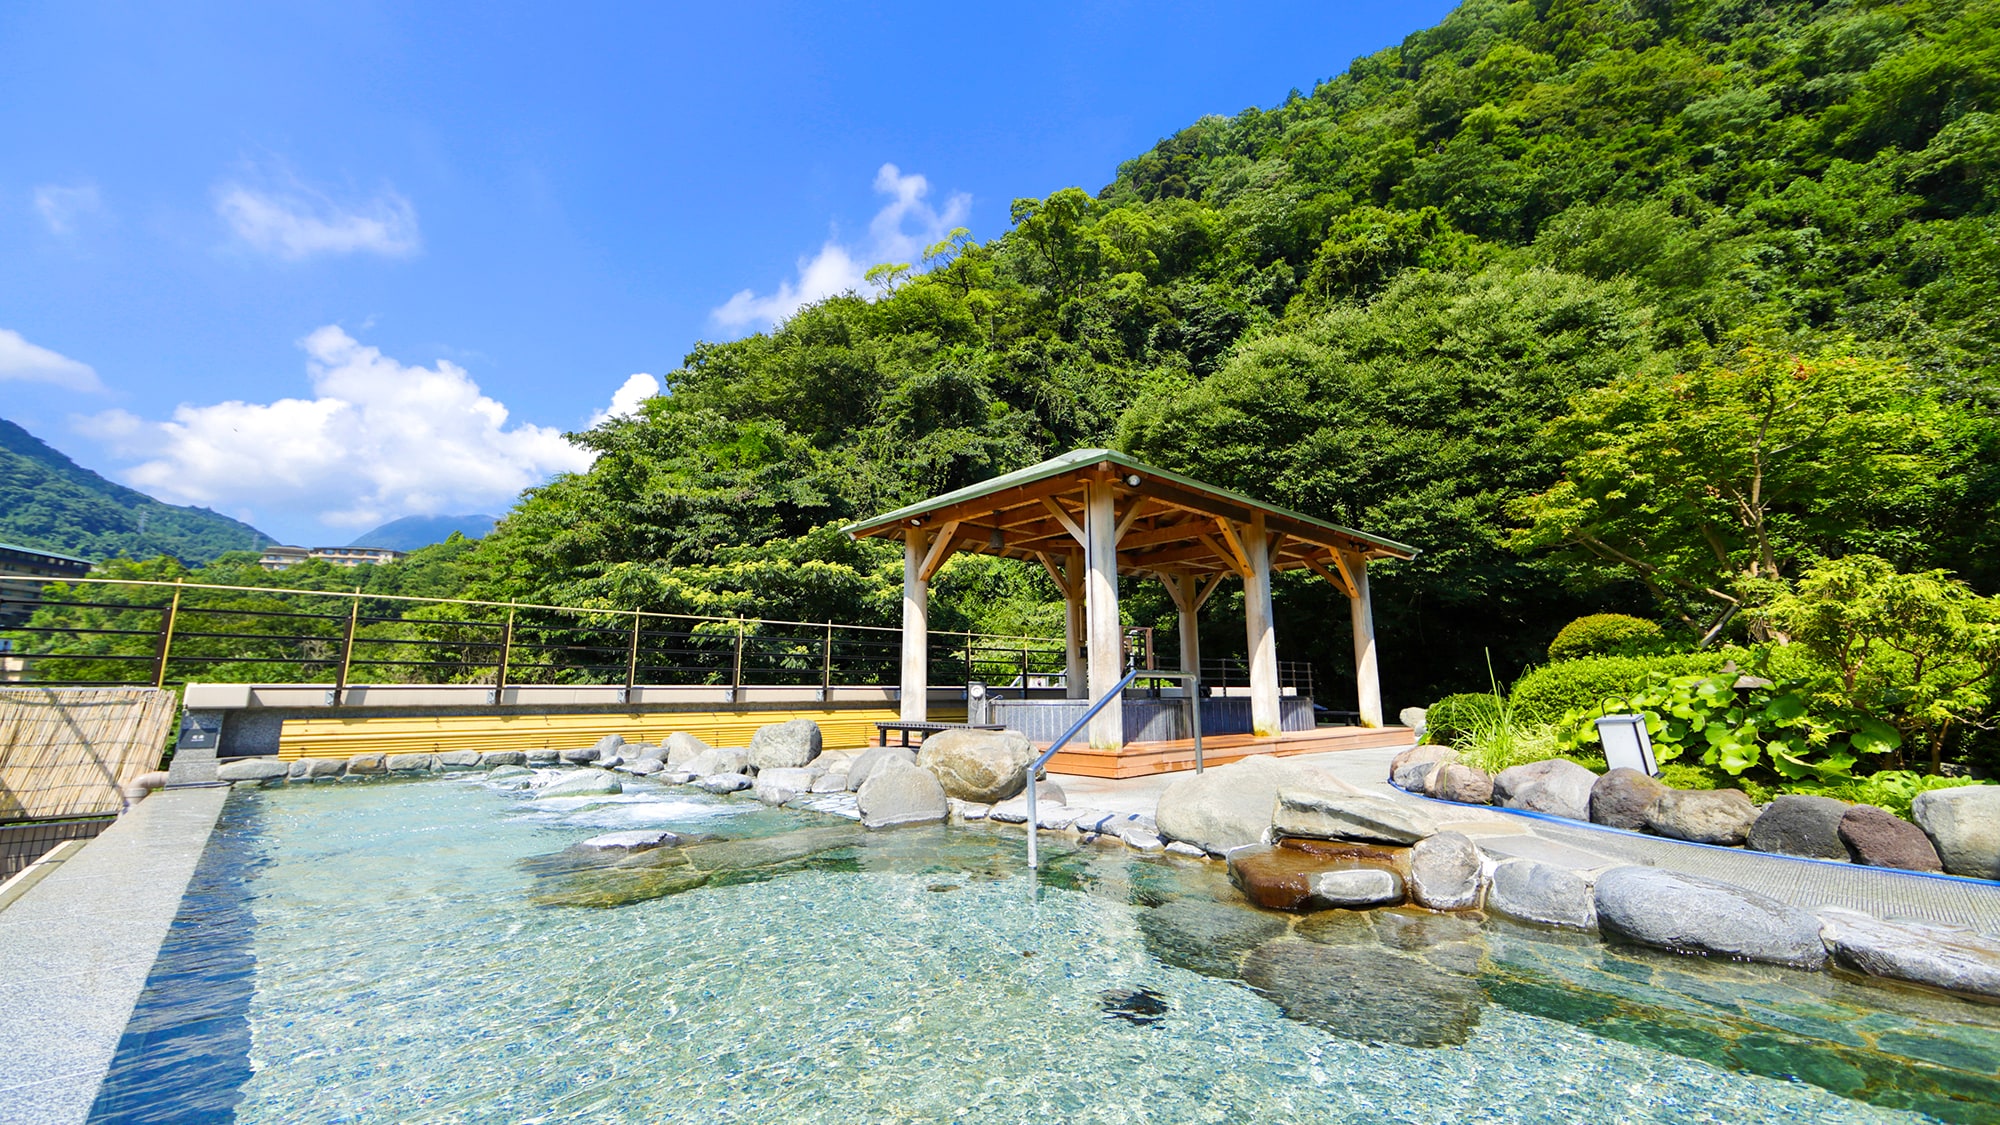 [Pemandian terbuka di langit] Waktu yang mewah untuk menikmati pemandian air panas sambil melihat empat musim Hakone yang kaya